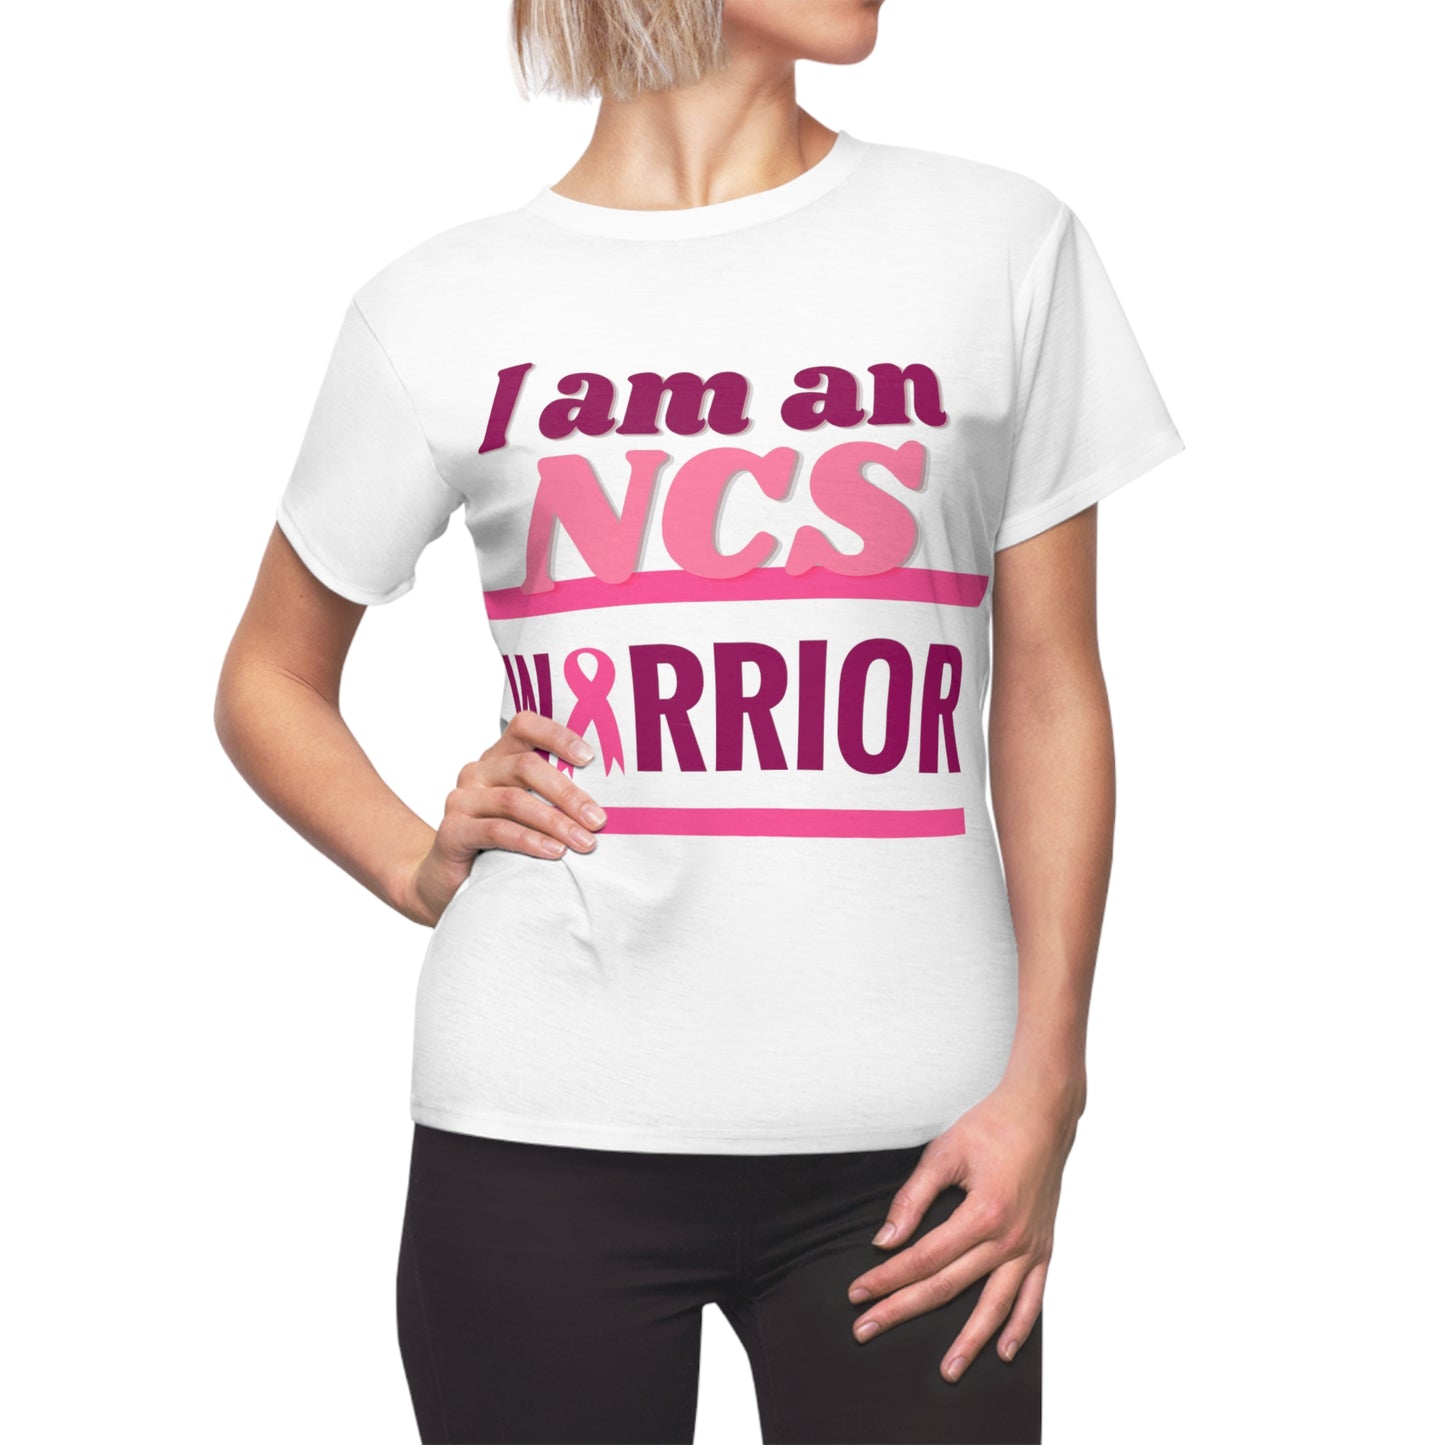 I am an NCS Warrior - Women's Cut & Sew Tee (AOP)